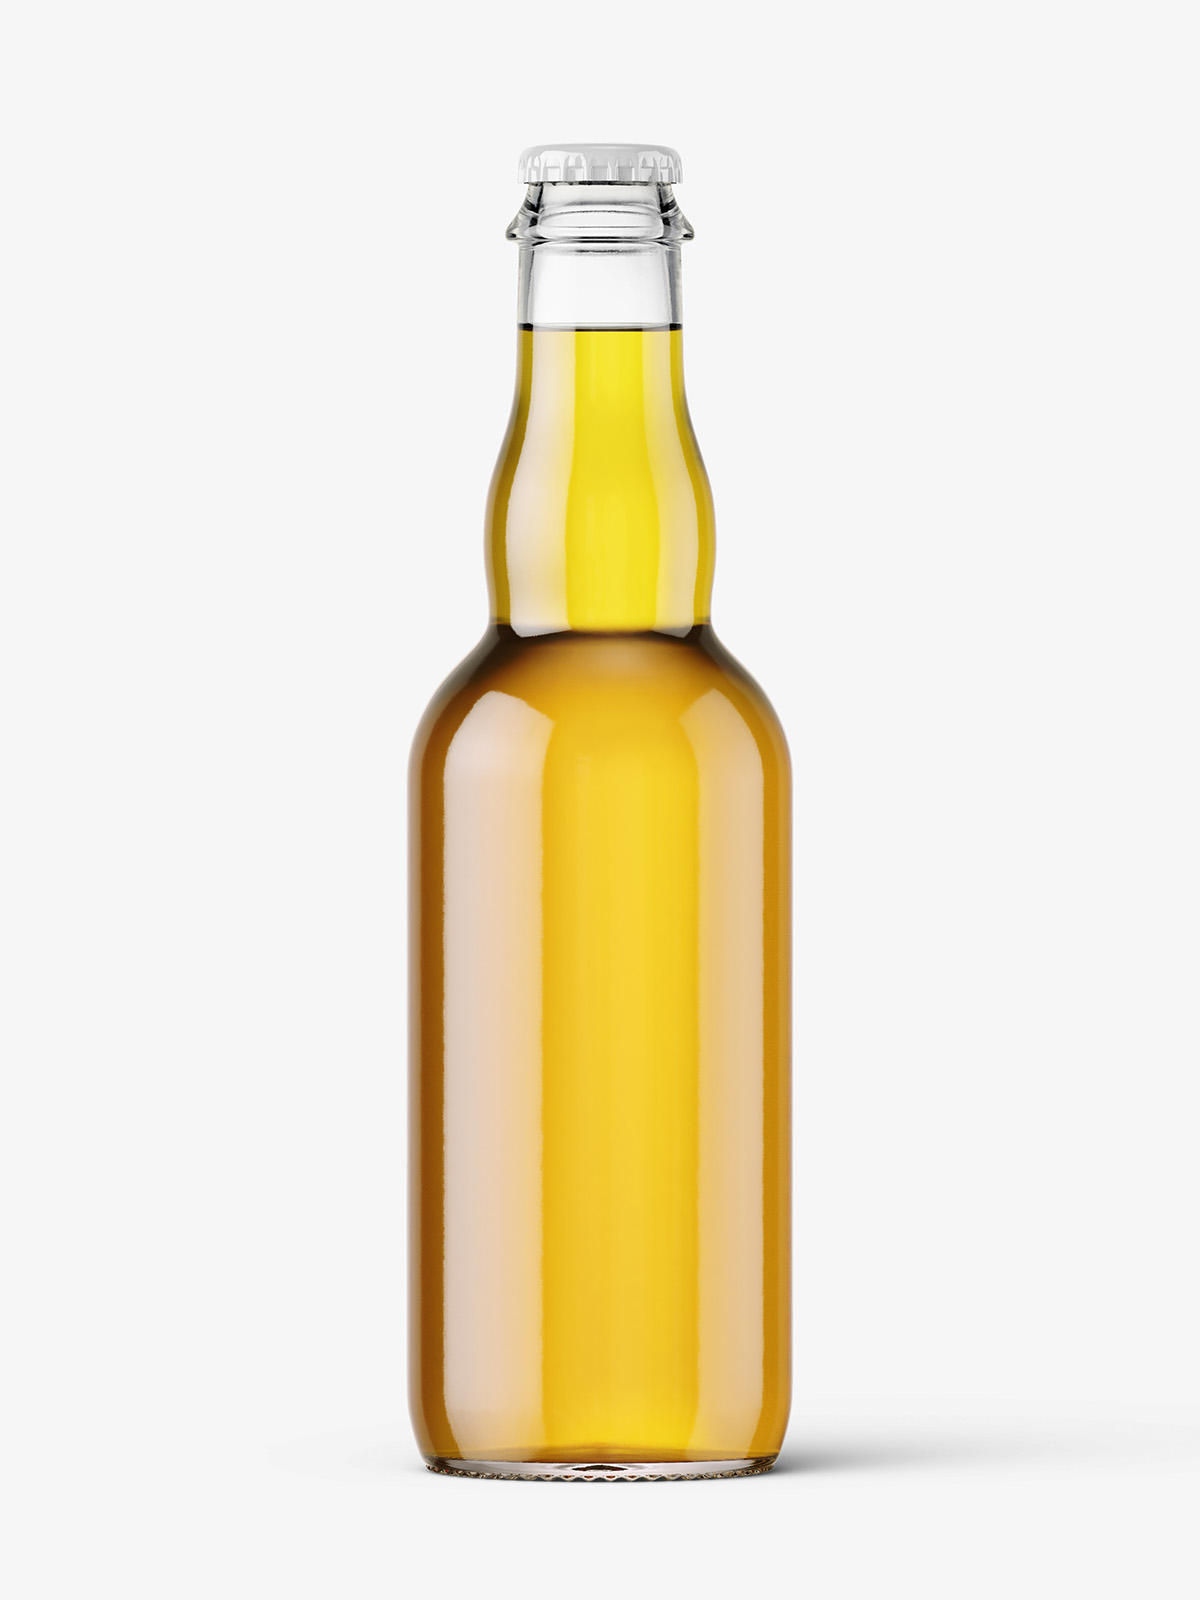 Download Transparent beer bottle mockup - Smarty Mockups